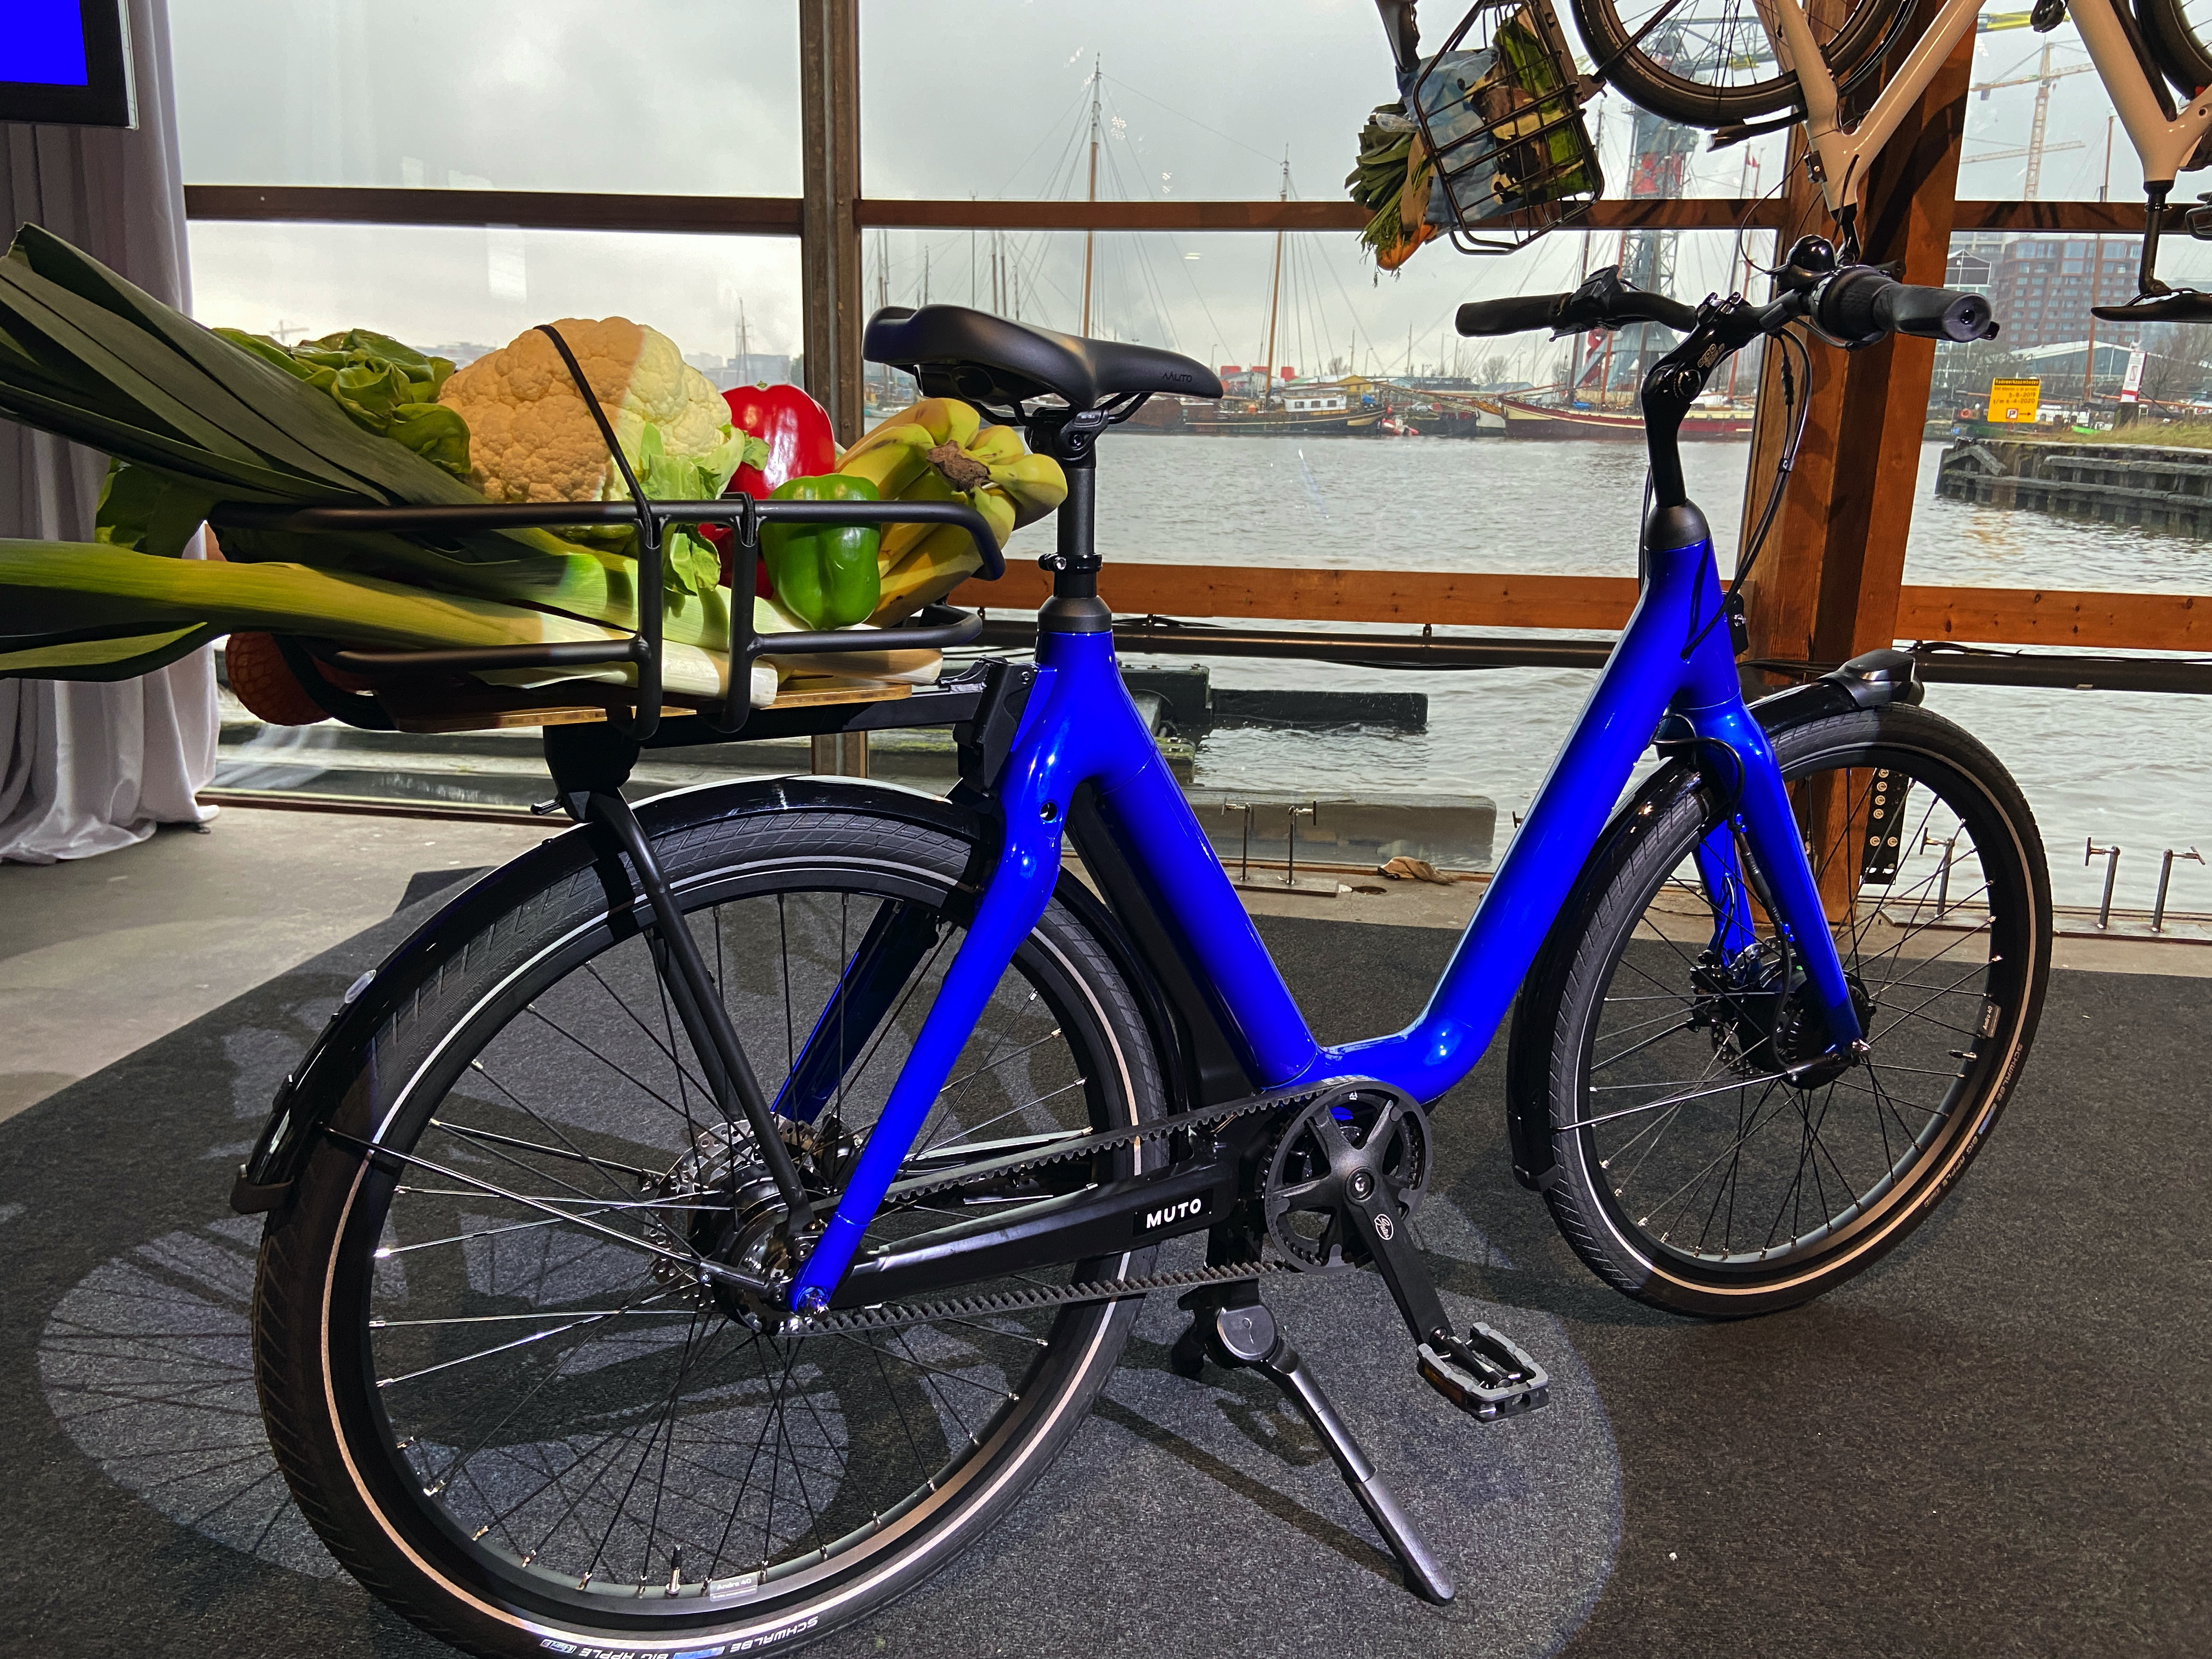 Elektrische fiets Muto is gemaakt als ultieme e-bike voor in de stad